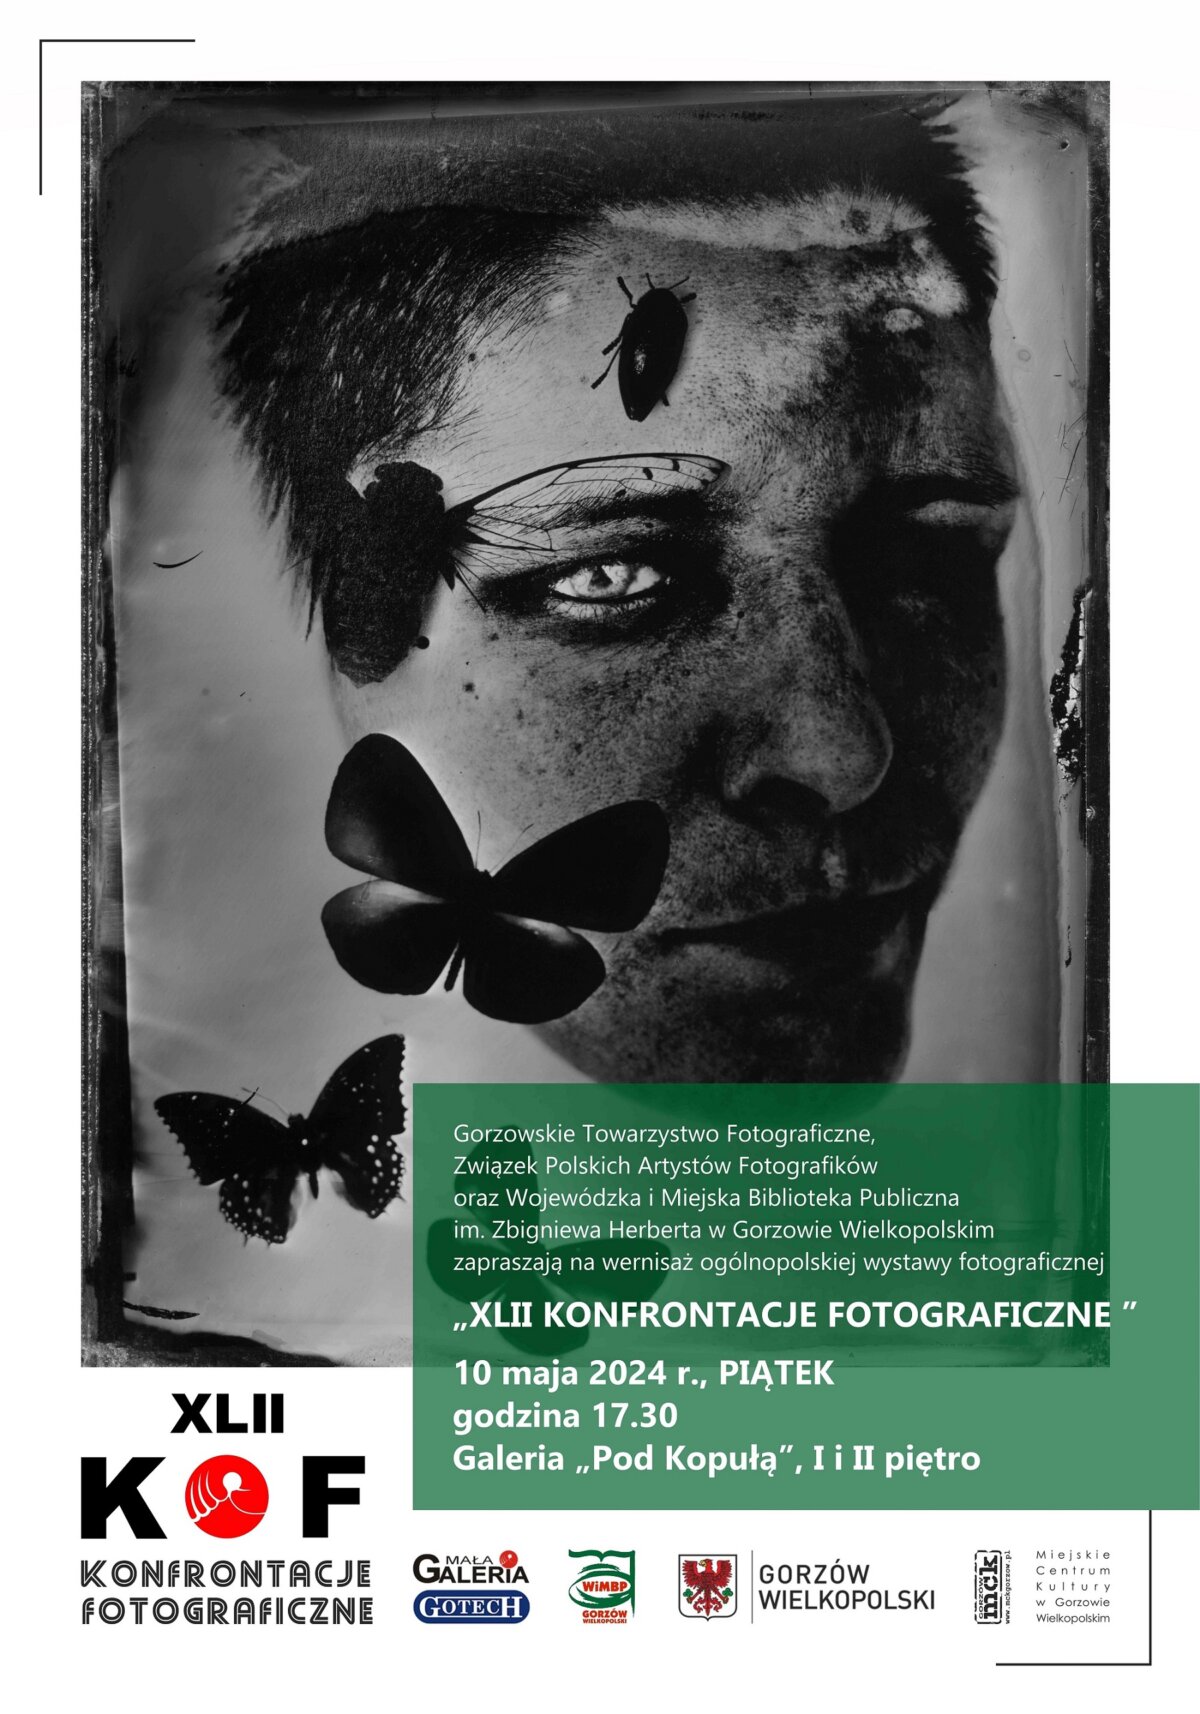 Plakat promujący wydarzeni, na szarym tle twarz i motyle, na zielonym dane dotyczące spotkania oraz różne loga.